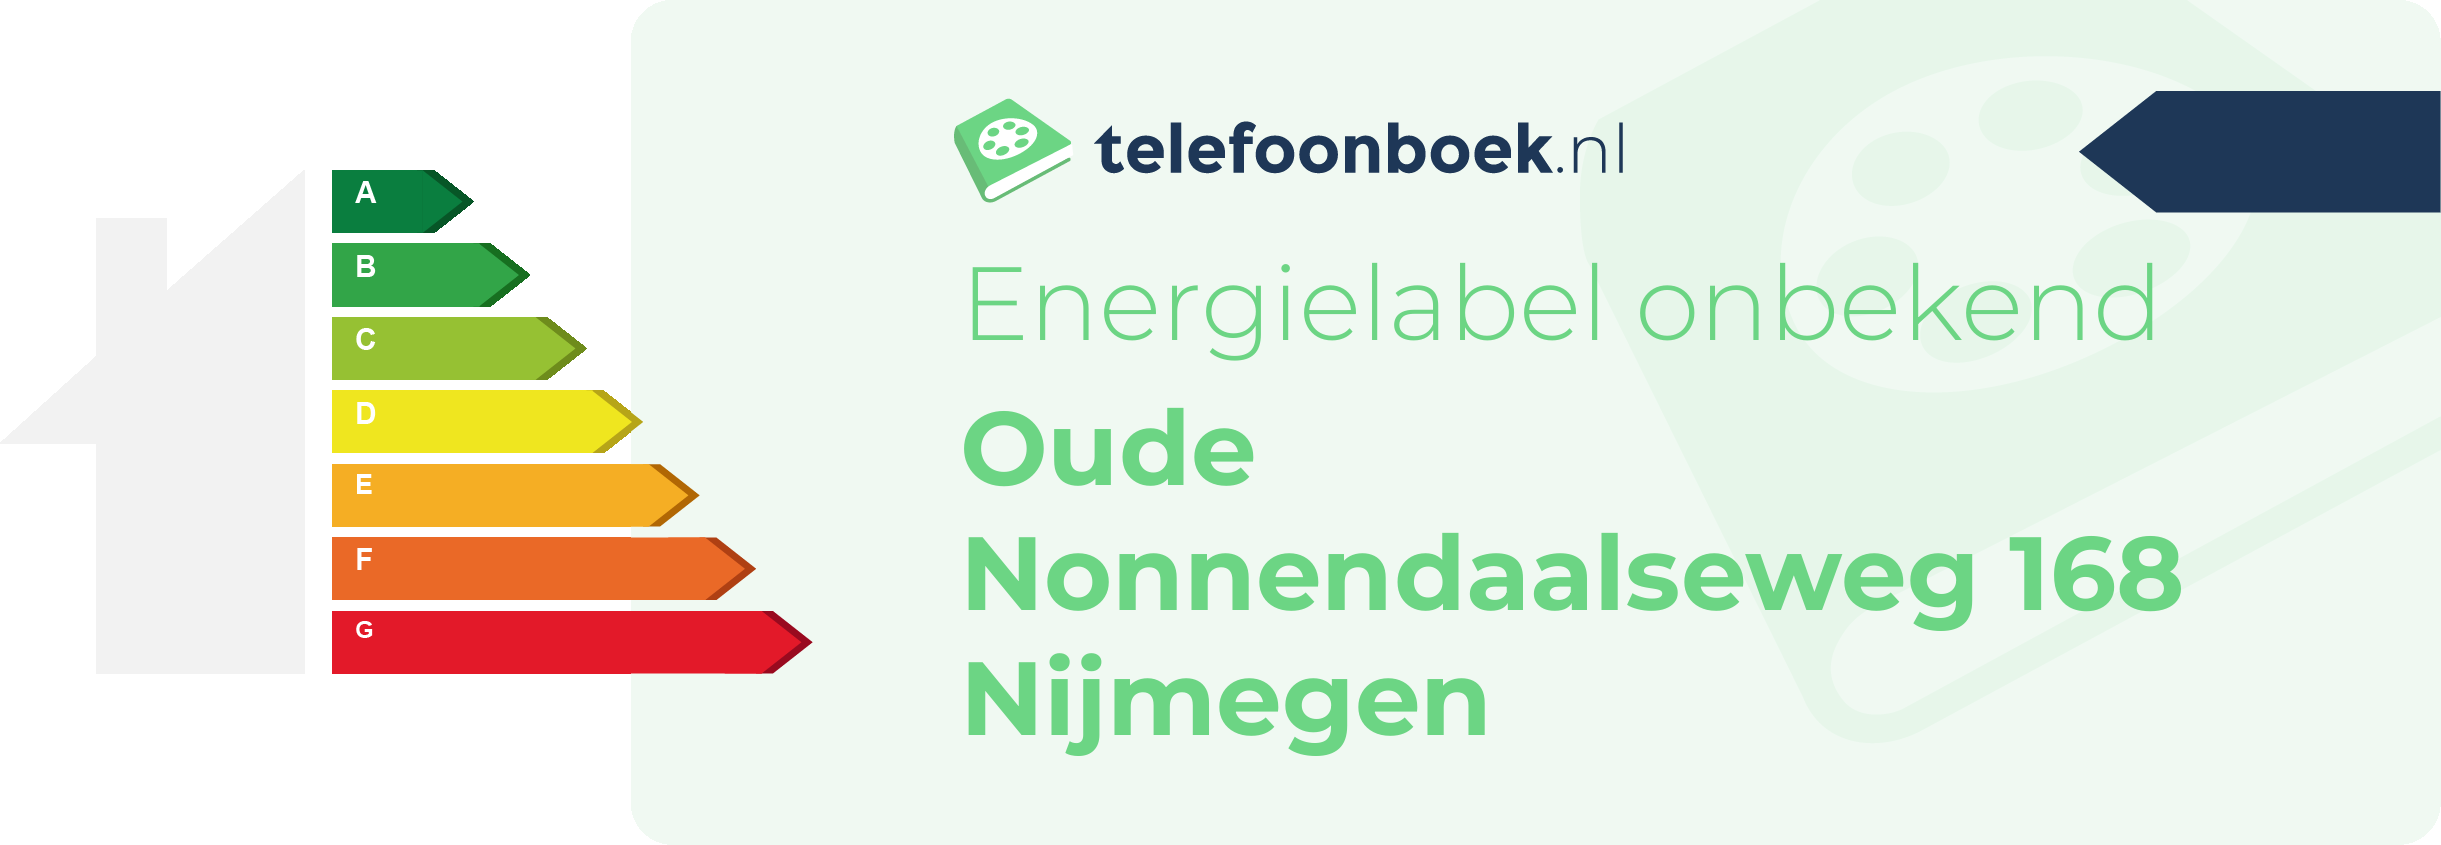 Energielabel Oude Nonnendaalseweg 168 Nijmegen